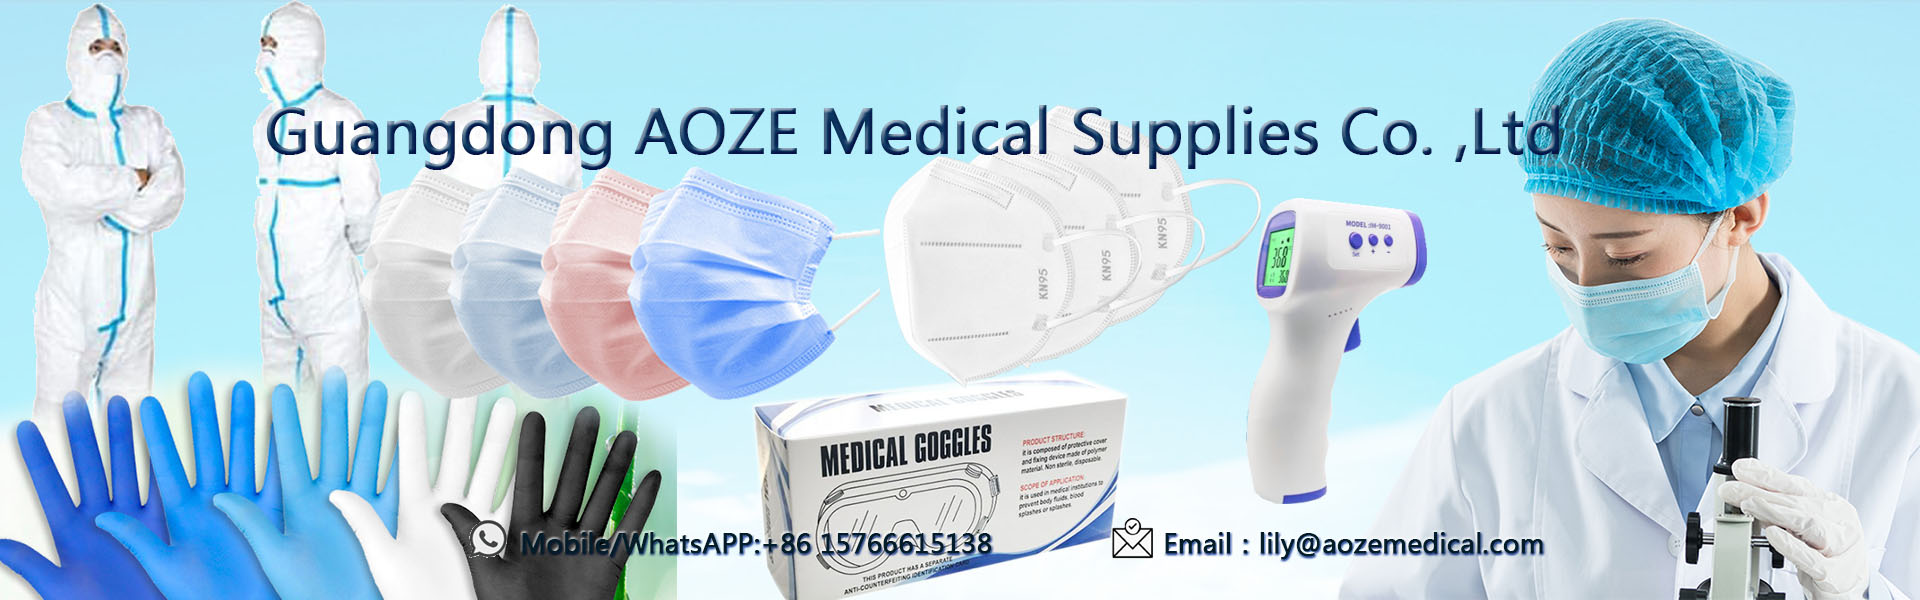 Masc indiúscartha 3ply, masc aghaidh kn95, masc aghaidh máinliachta,Guangdong AOZE Medical Supplies Co.,Ltd